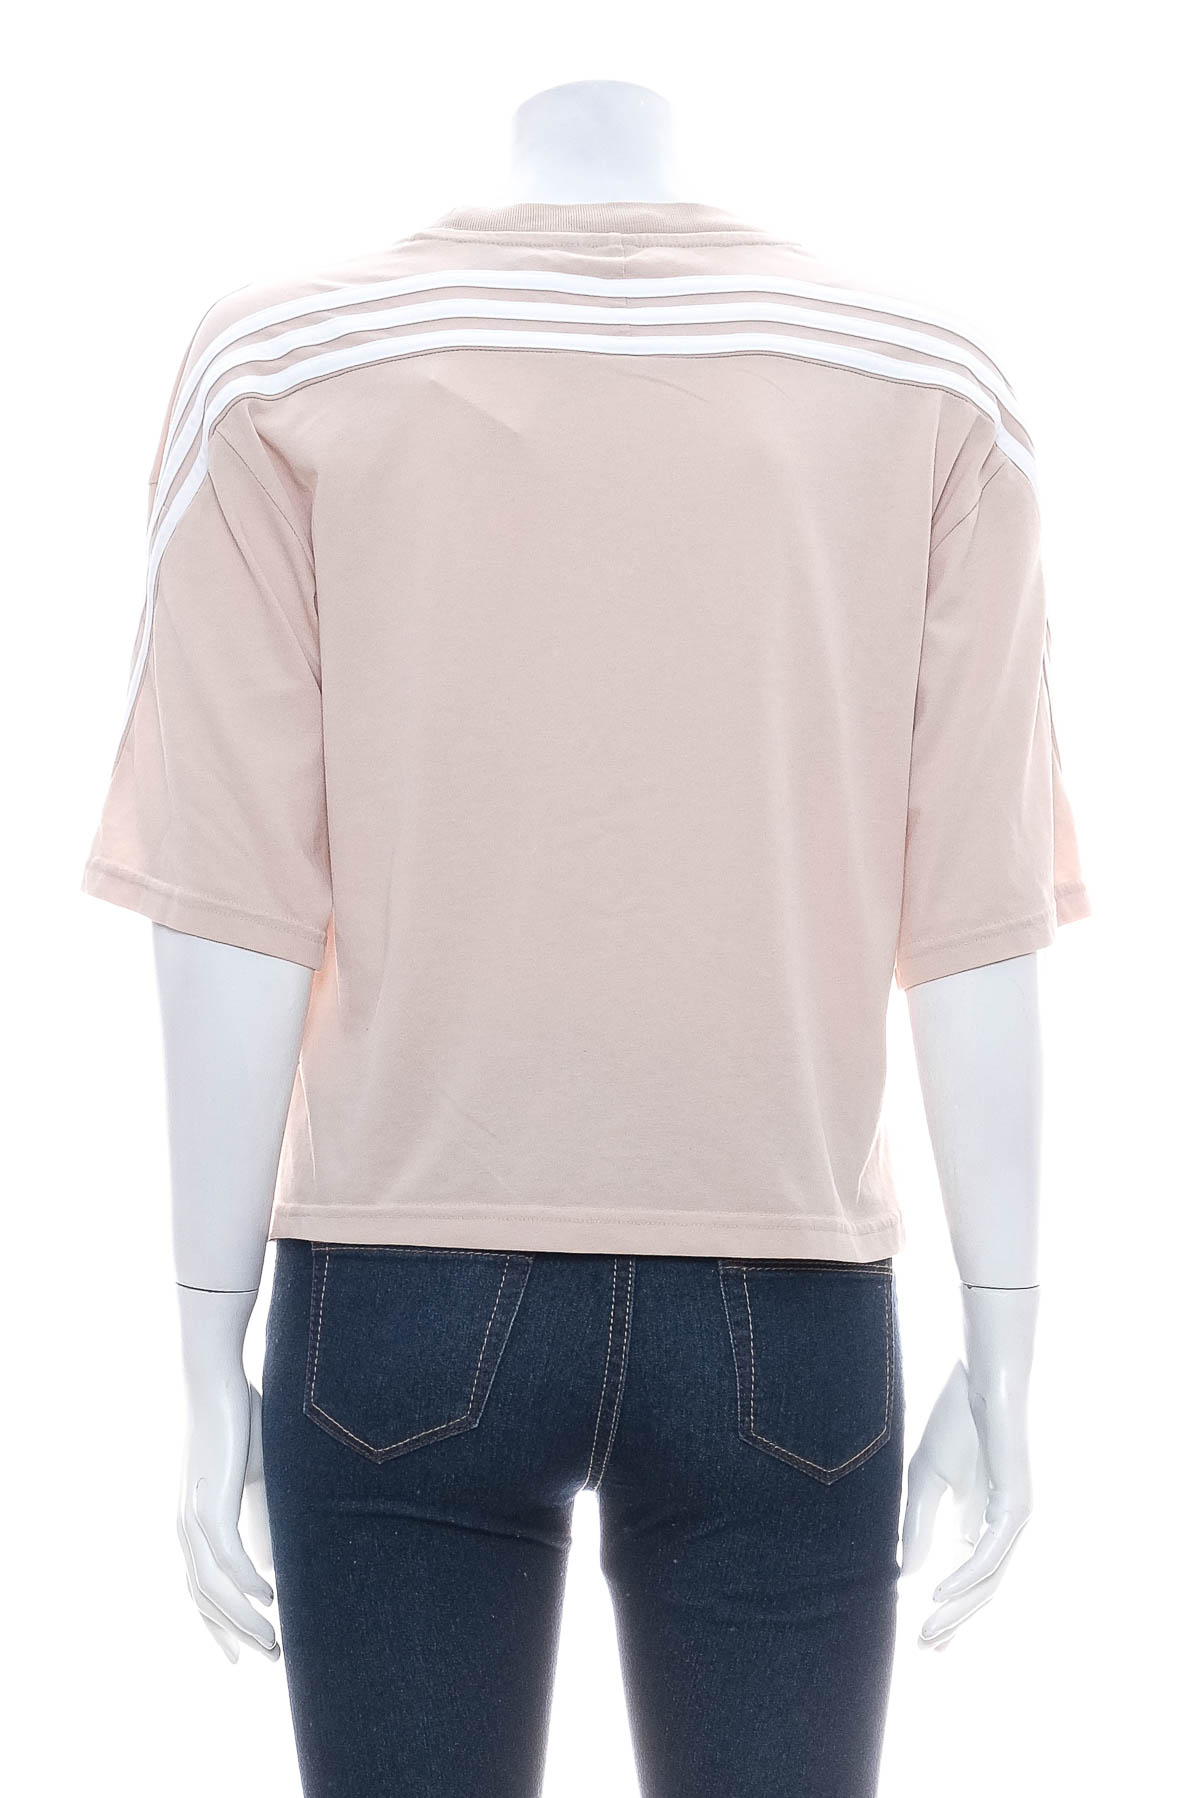 Γυναικεία μπλούζα - Adidas - 1